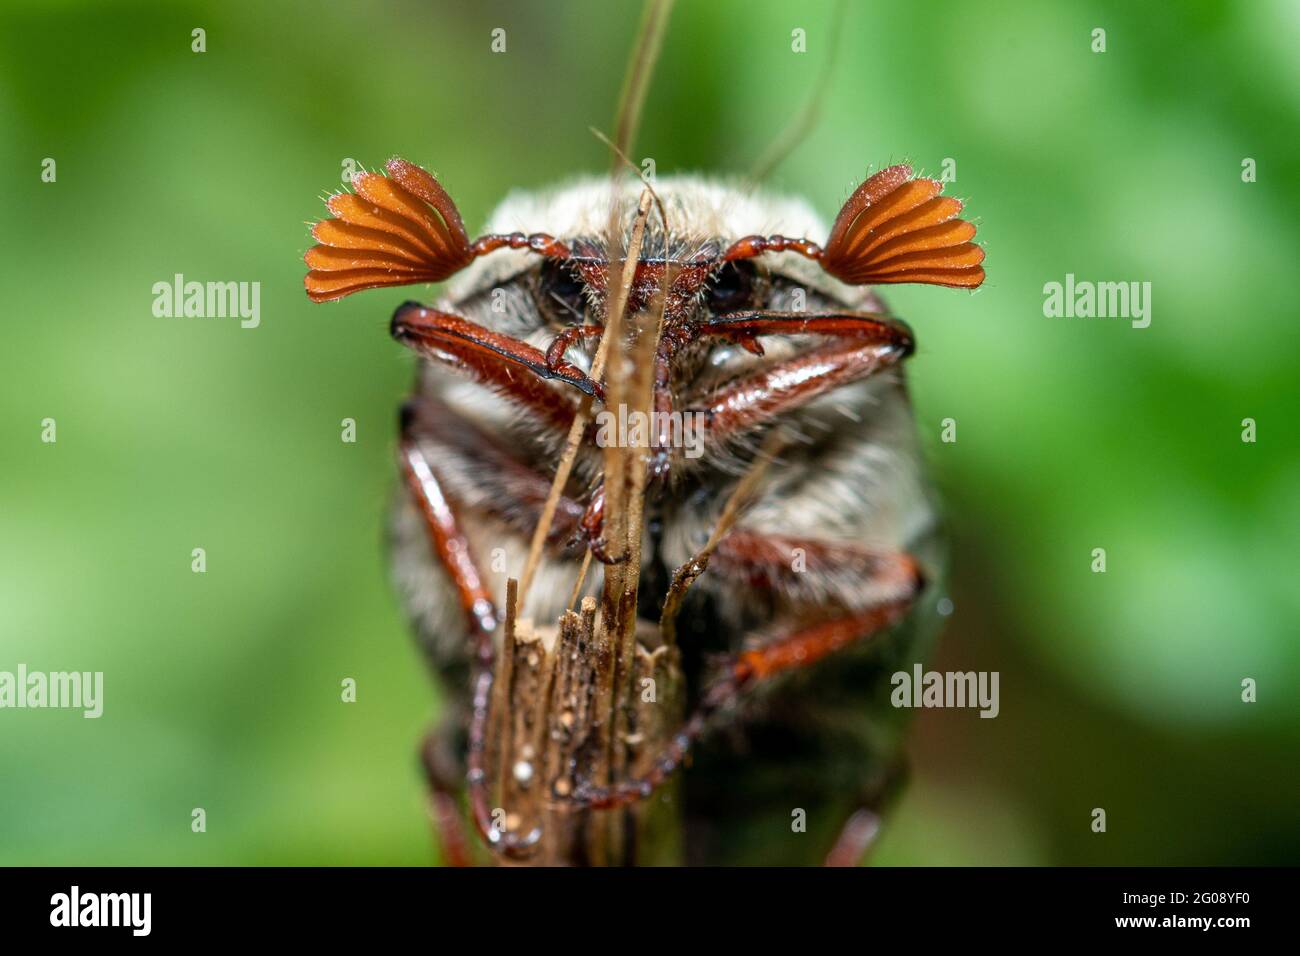 Le coléoptère du Cockchaker a également appelé un insecte de mai (Melolontha melolontha, Royaume-Uni. Insecte mâle montrant des antennes bronzées. Banque D'Images